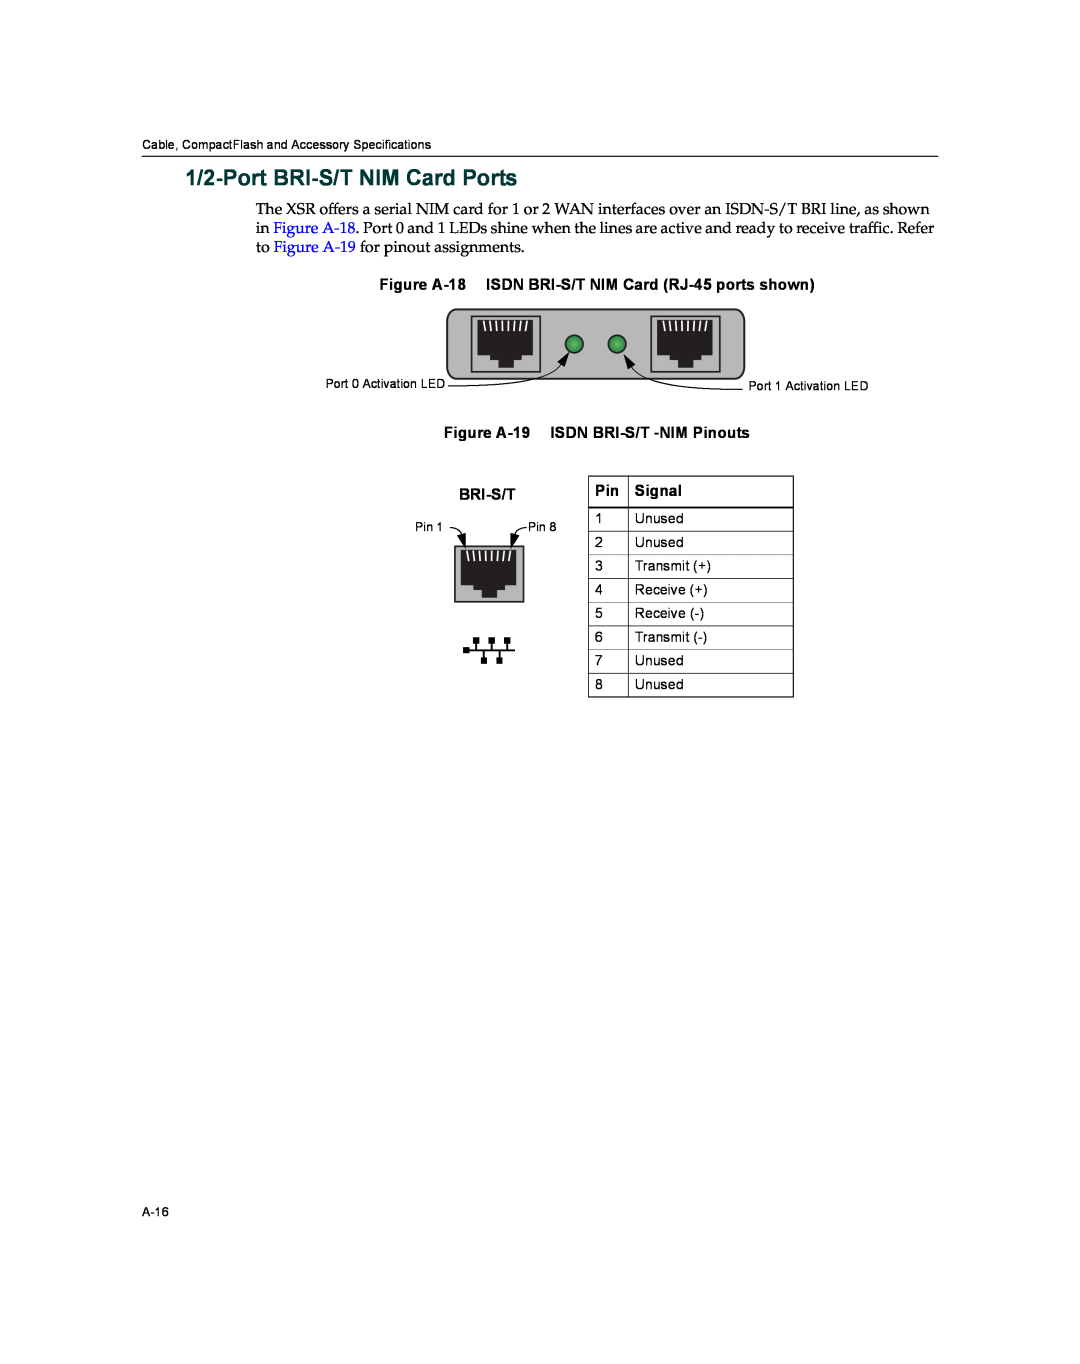 Enterasys Networks XSR-3020 1/2-Port BRI-S/T NIM Card Ports, Figure A-18 ISDN BRI-S/T NIM Card RJ-45 ports shown, Bri-S/T 